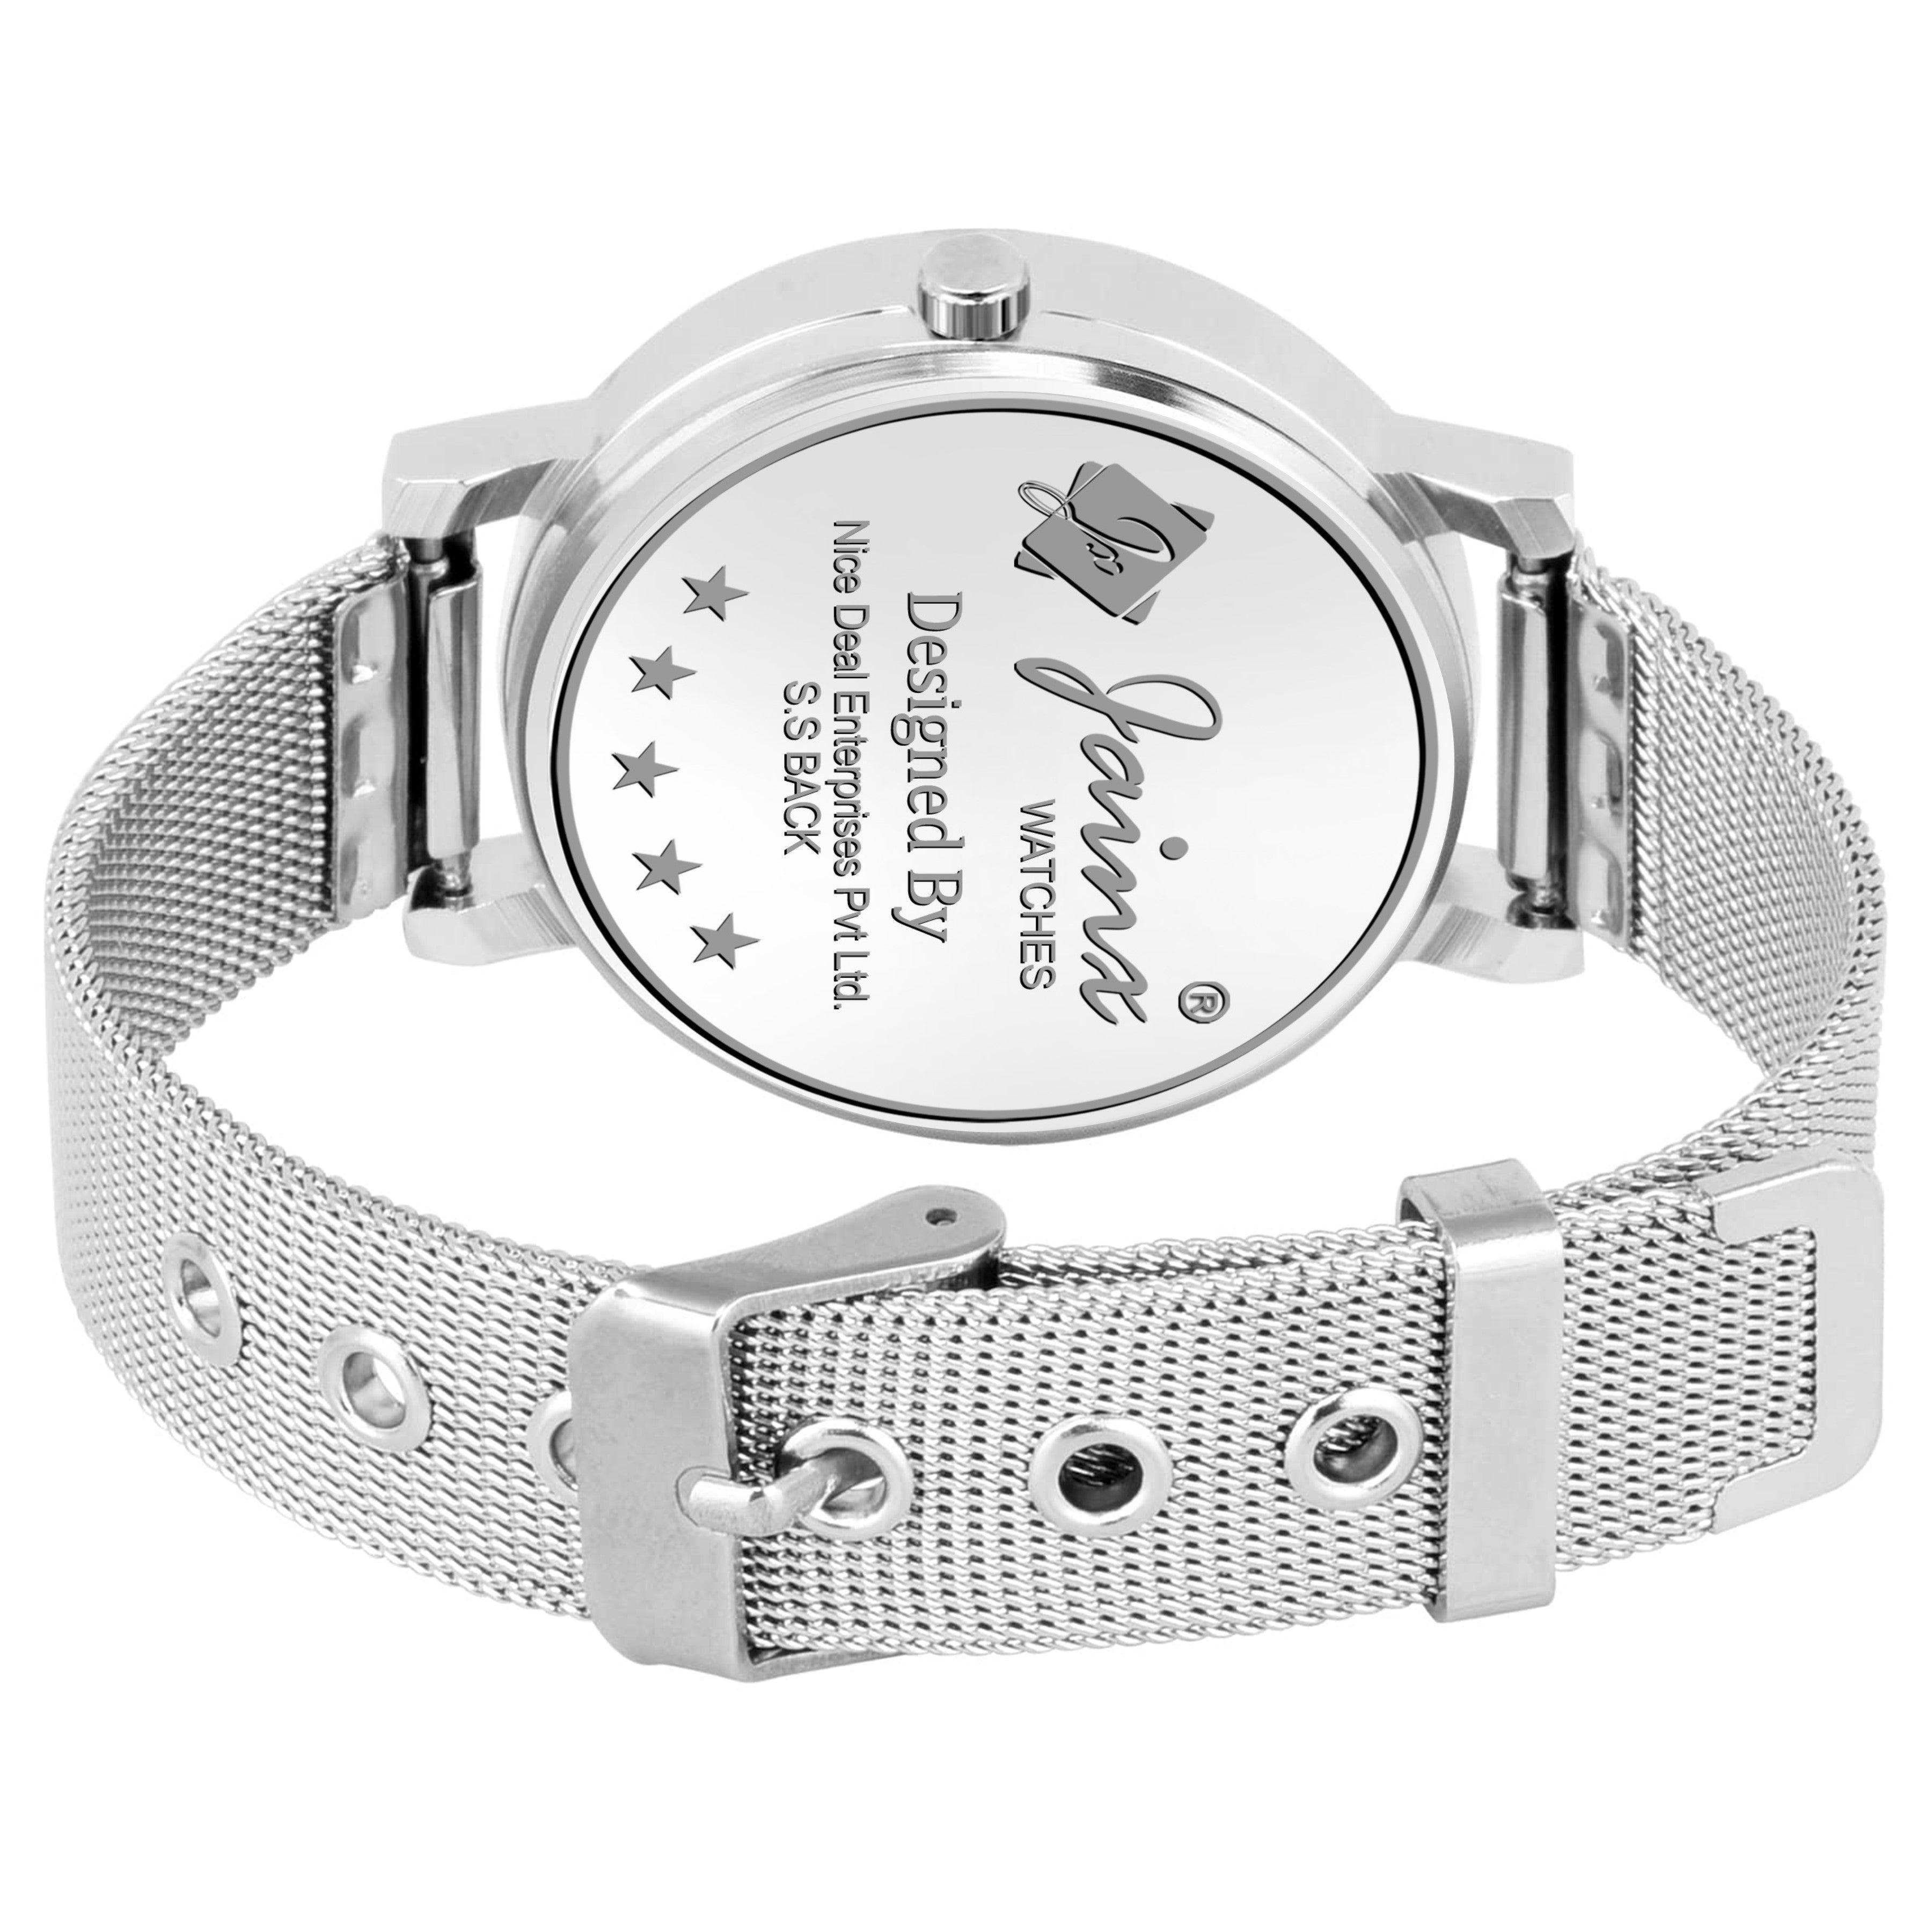 Jainx Pink Dial Silver Mesh Chain Analog Wrist Watch for Women - JW8558 - Jainx Store